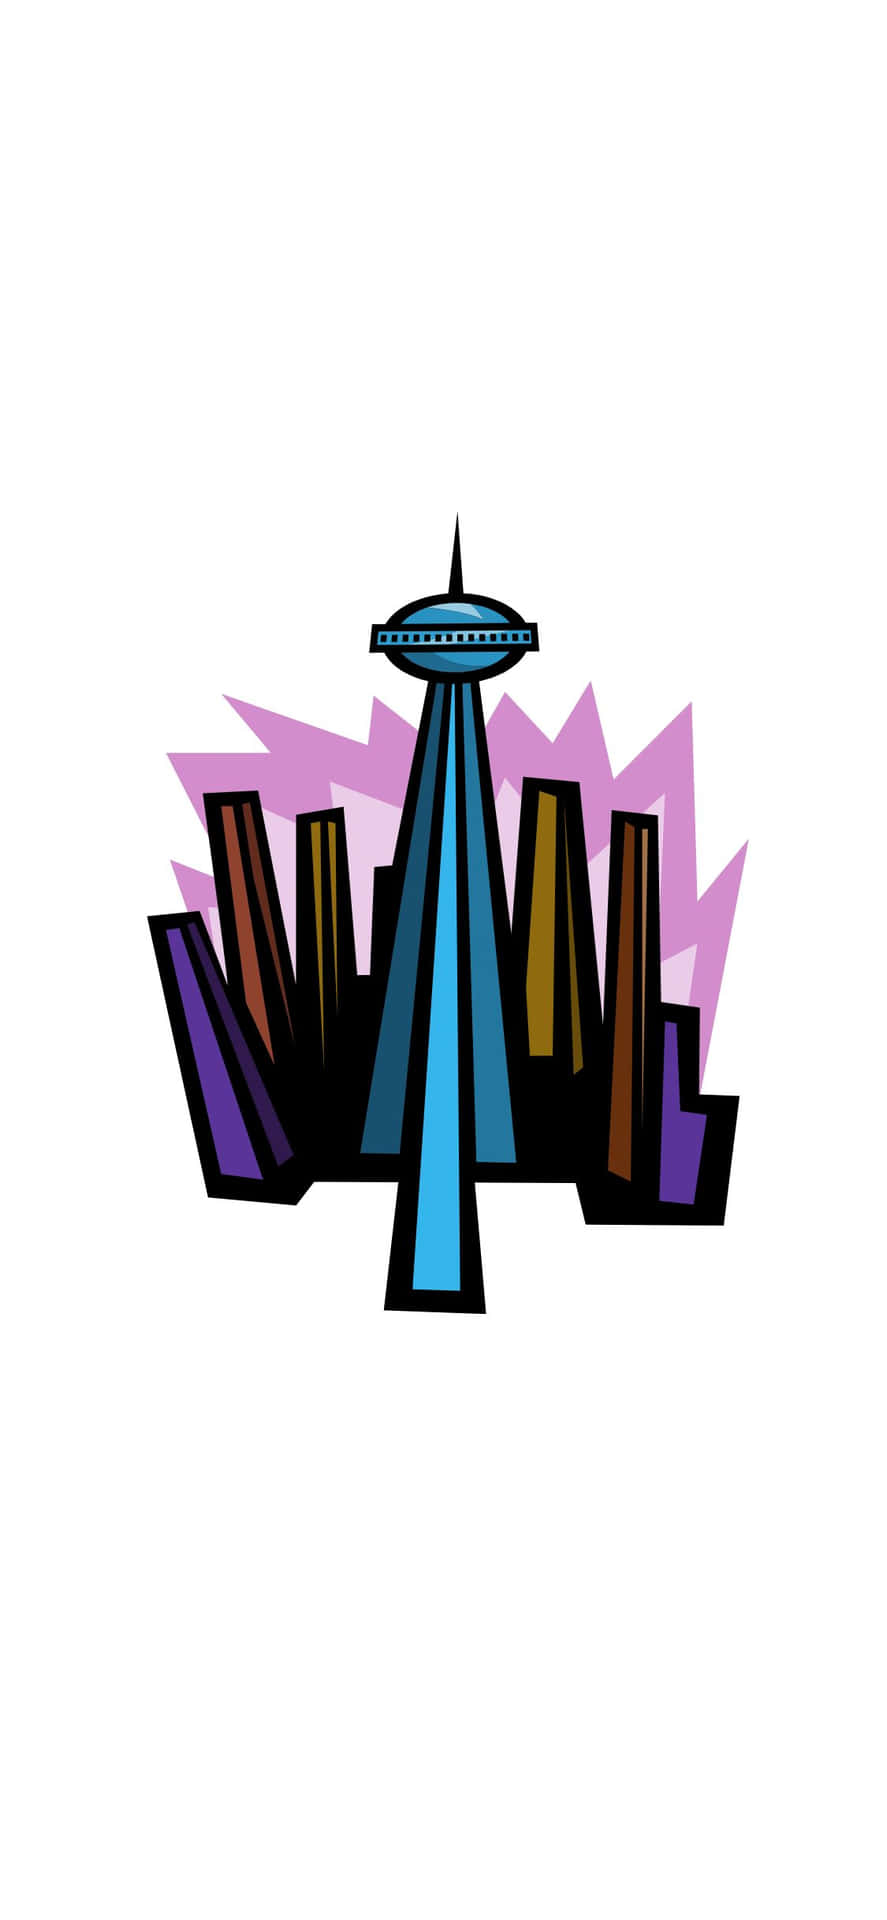 Genießensie Einen Malerischen Blick Auf Seattle Von Ihrem Iphone X.